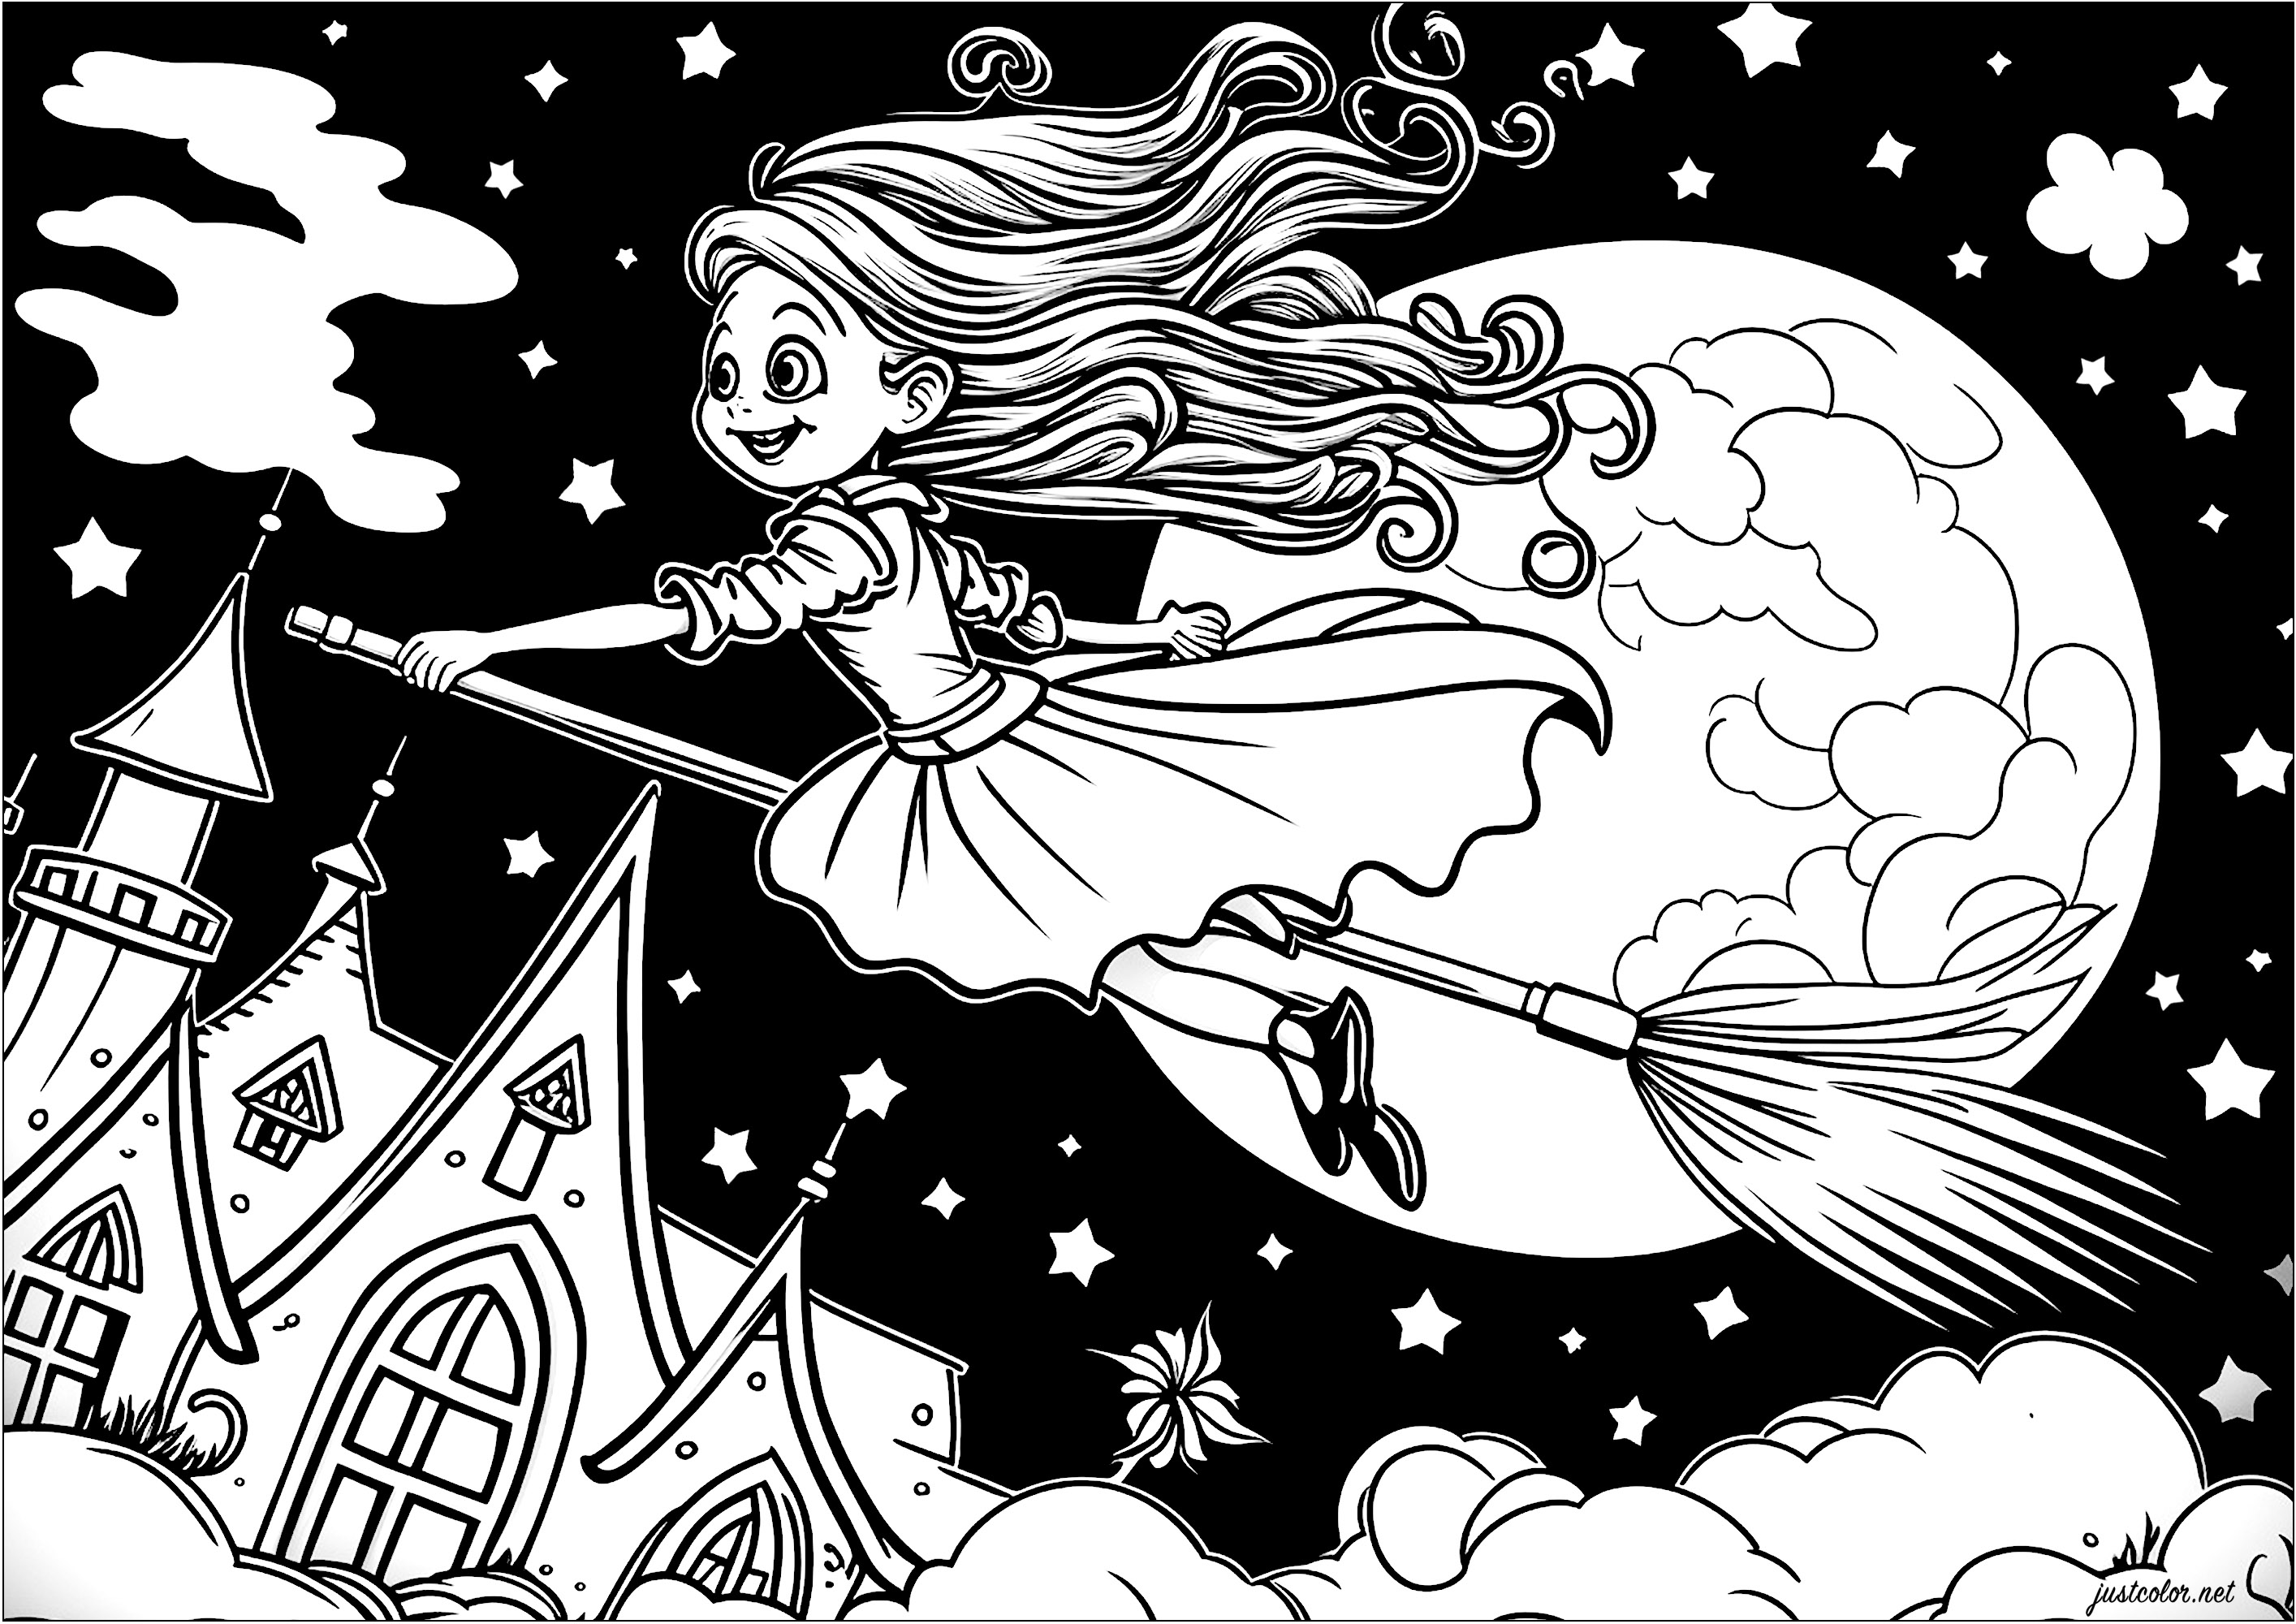 Coloriage d'une jeune sorcière volant sur son balais. Voici une jolie sorcière représentée sur son balais volant dans les airs, au dessus des nuages. Elle est vêtue d'une robe longue et élégante, et elle a les cheveux dans le vent.La lune est pleine et semble géante derrière elle, Artiste : IAsabelle